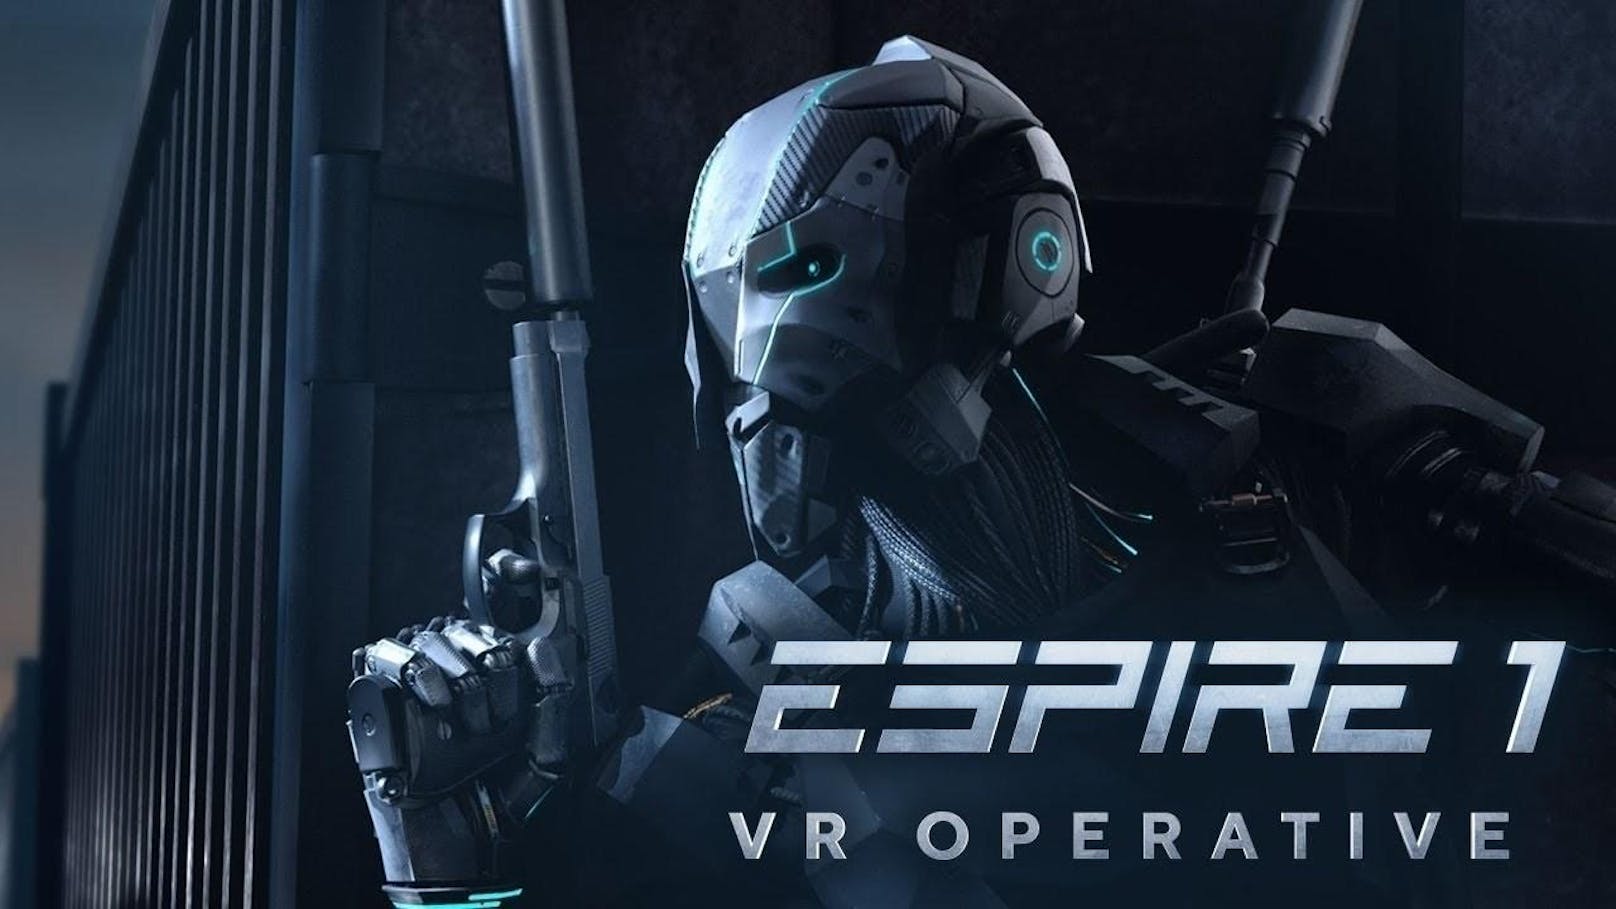 Der zweite Titel ist im VR-Bereich angesiedelt. Im VR-Stealth-Thriller Espire 1:VR Operative, der für alle relevanten VR-Plattformen erscheint, kontrollieren die Spieler in der Rolle von Agenten futuristische Drohnen aus ihrem virtuellen Kontrollzentrum. Die spannende Singleplayer-Kampagne setzt auf volle Immersion, bei der die Spieler nicht nur auf Stealth setzen, sondern auch ein volles Arsenal an Waffen und Gadgets zur Verfügung haben. Über das Mikrofon des Headsets können sie zudem direkt Befehle geben und ihre Umgebung beeinflussen. Dabei haben sich die Entwickler große Ziele gesetzt: Espire 1 orientiert sich an Kult-Titeln wie GoldenEye und Metal Gear Solid. <a href="https://www.youtube.com/watch?v=IgeOP9XT9j8&feature=youtu.be" target="_blank">Den Trailer gibt es hier.</a>